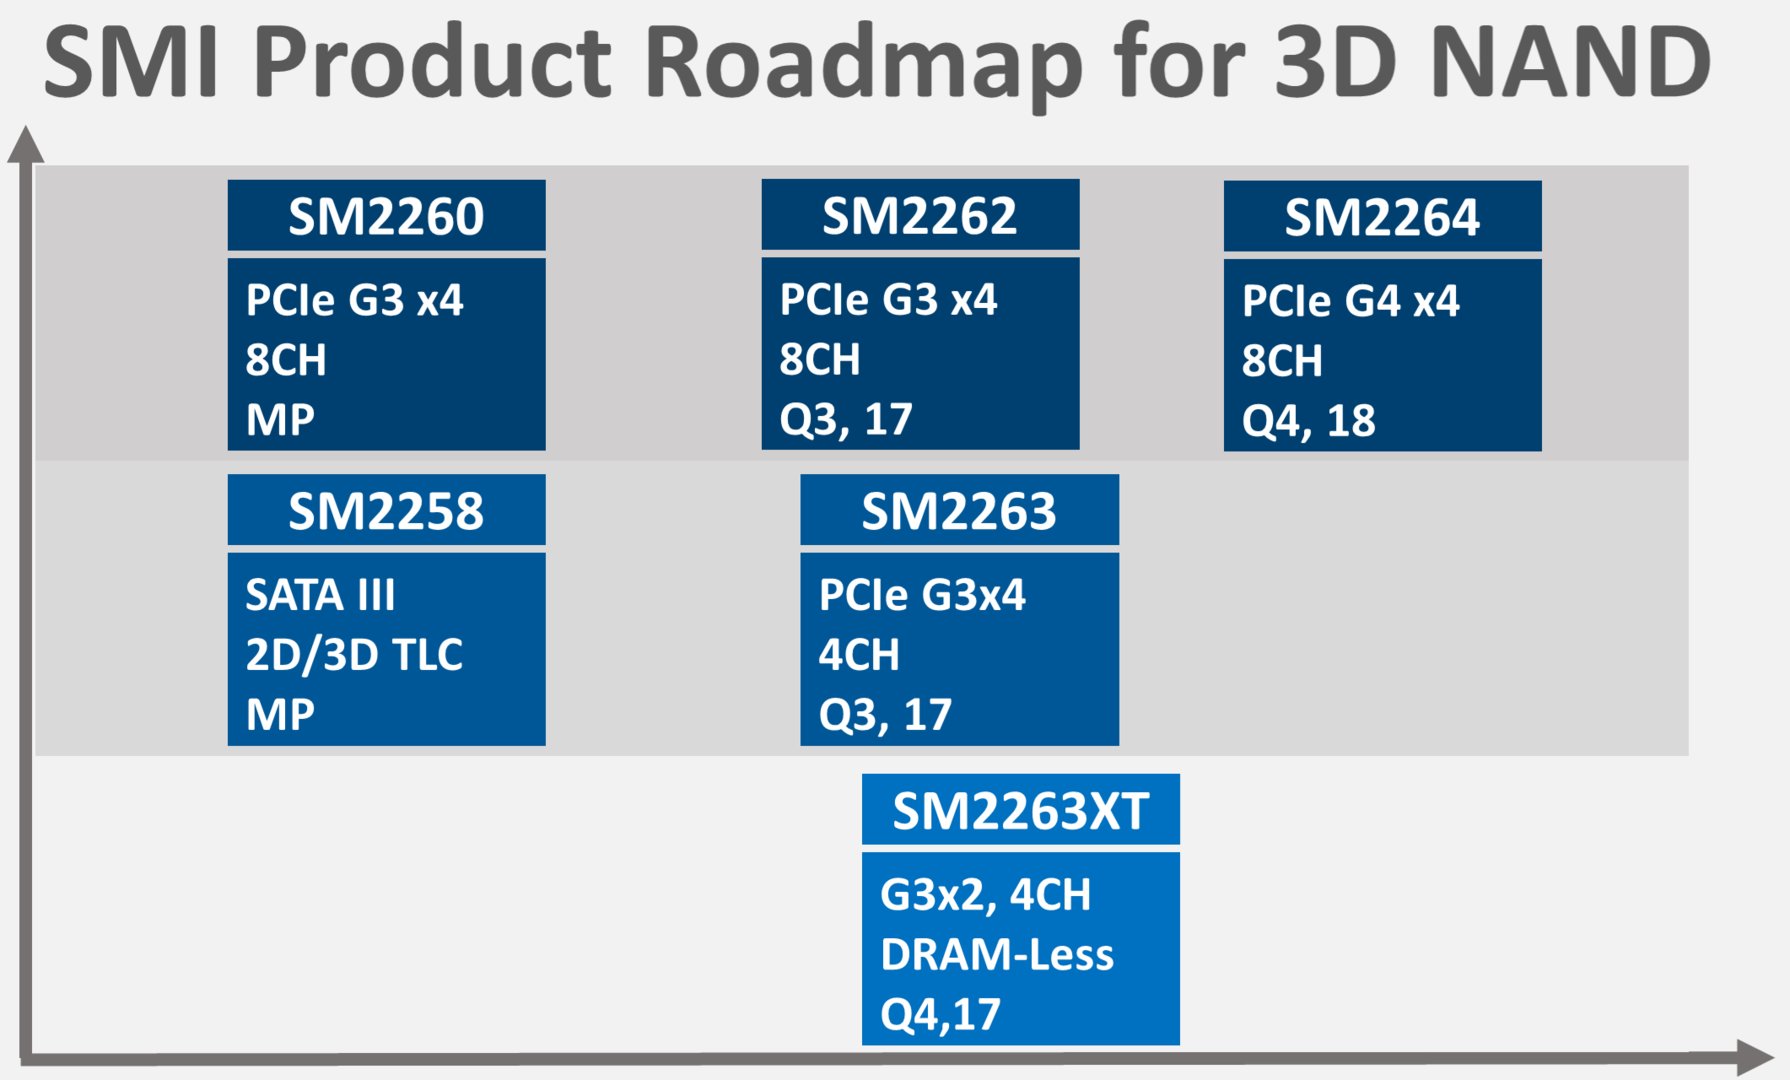 SMI-Roadmap mit SM2262, SM2263, SM2263XT und SM2264